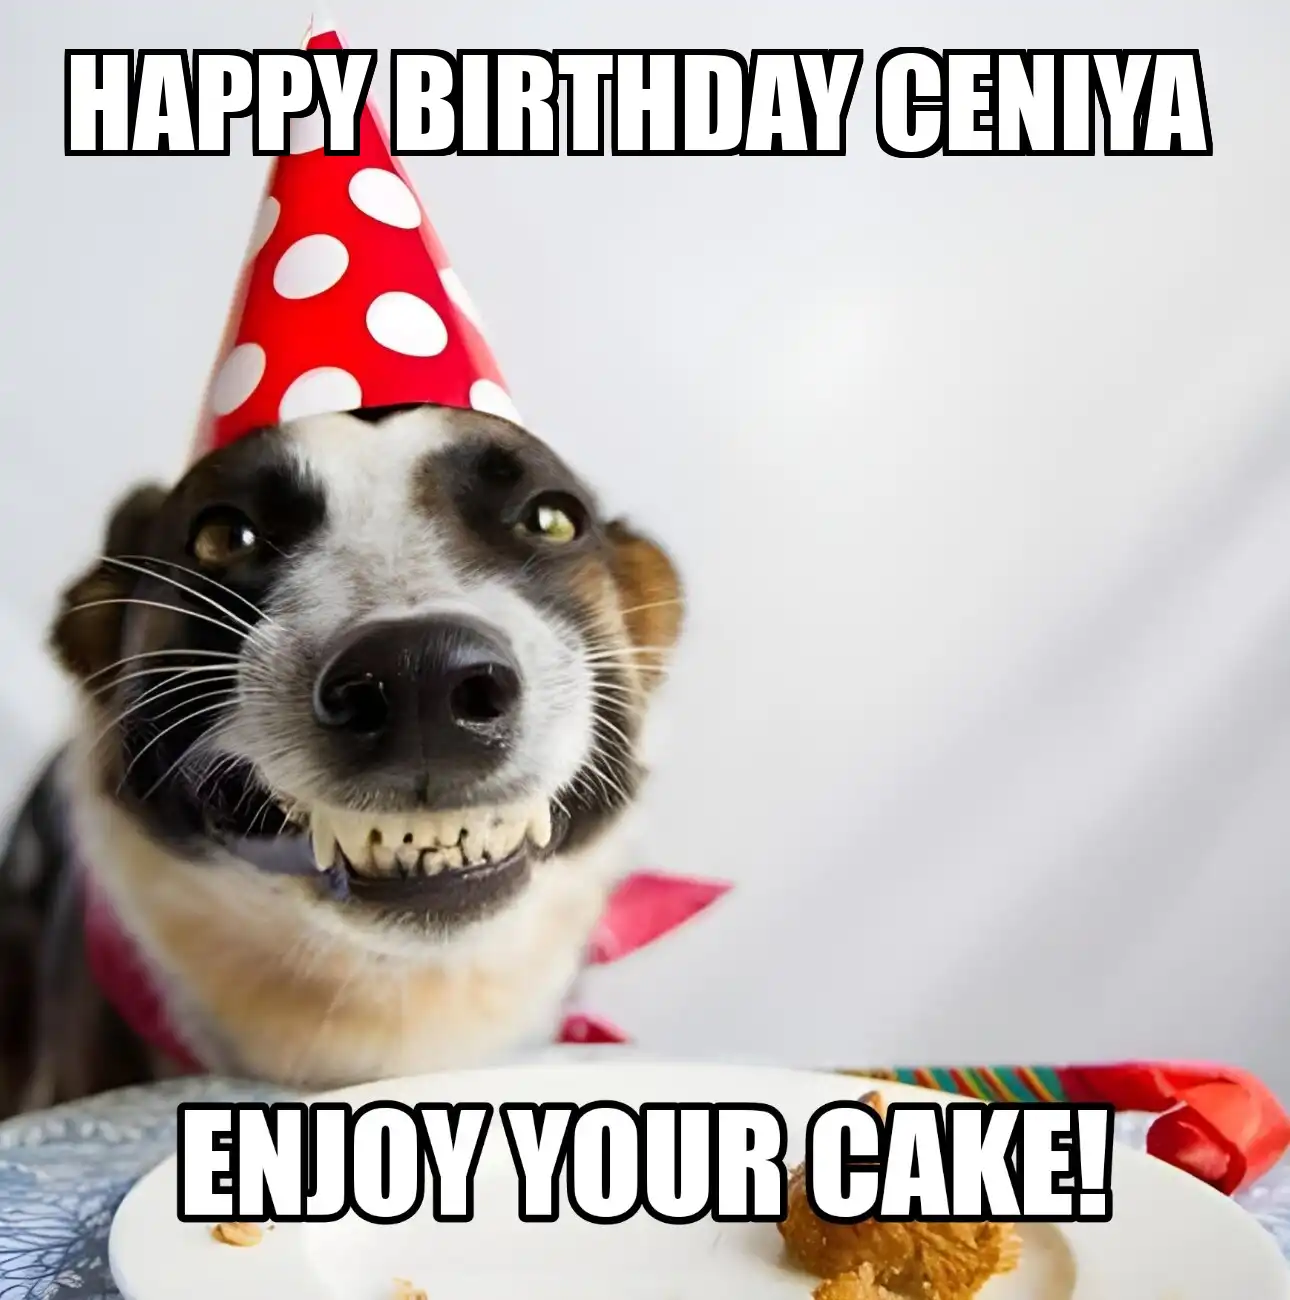 Happy Birthday Ceniya Enjoy Your Cake Dog Meme